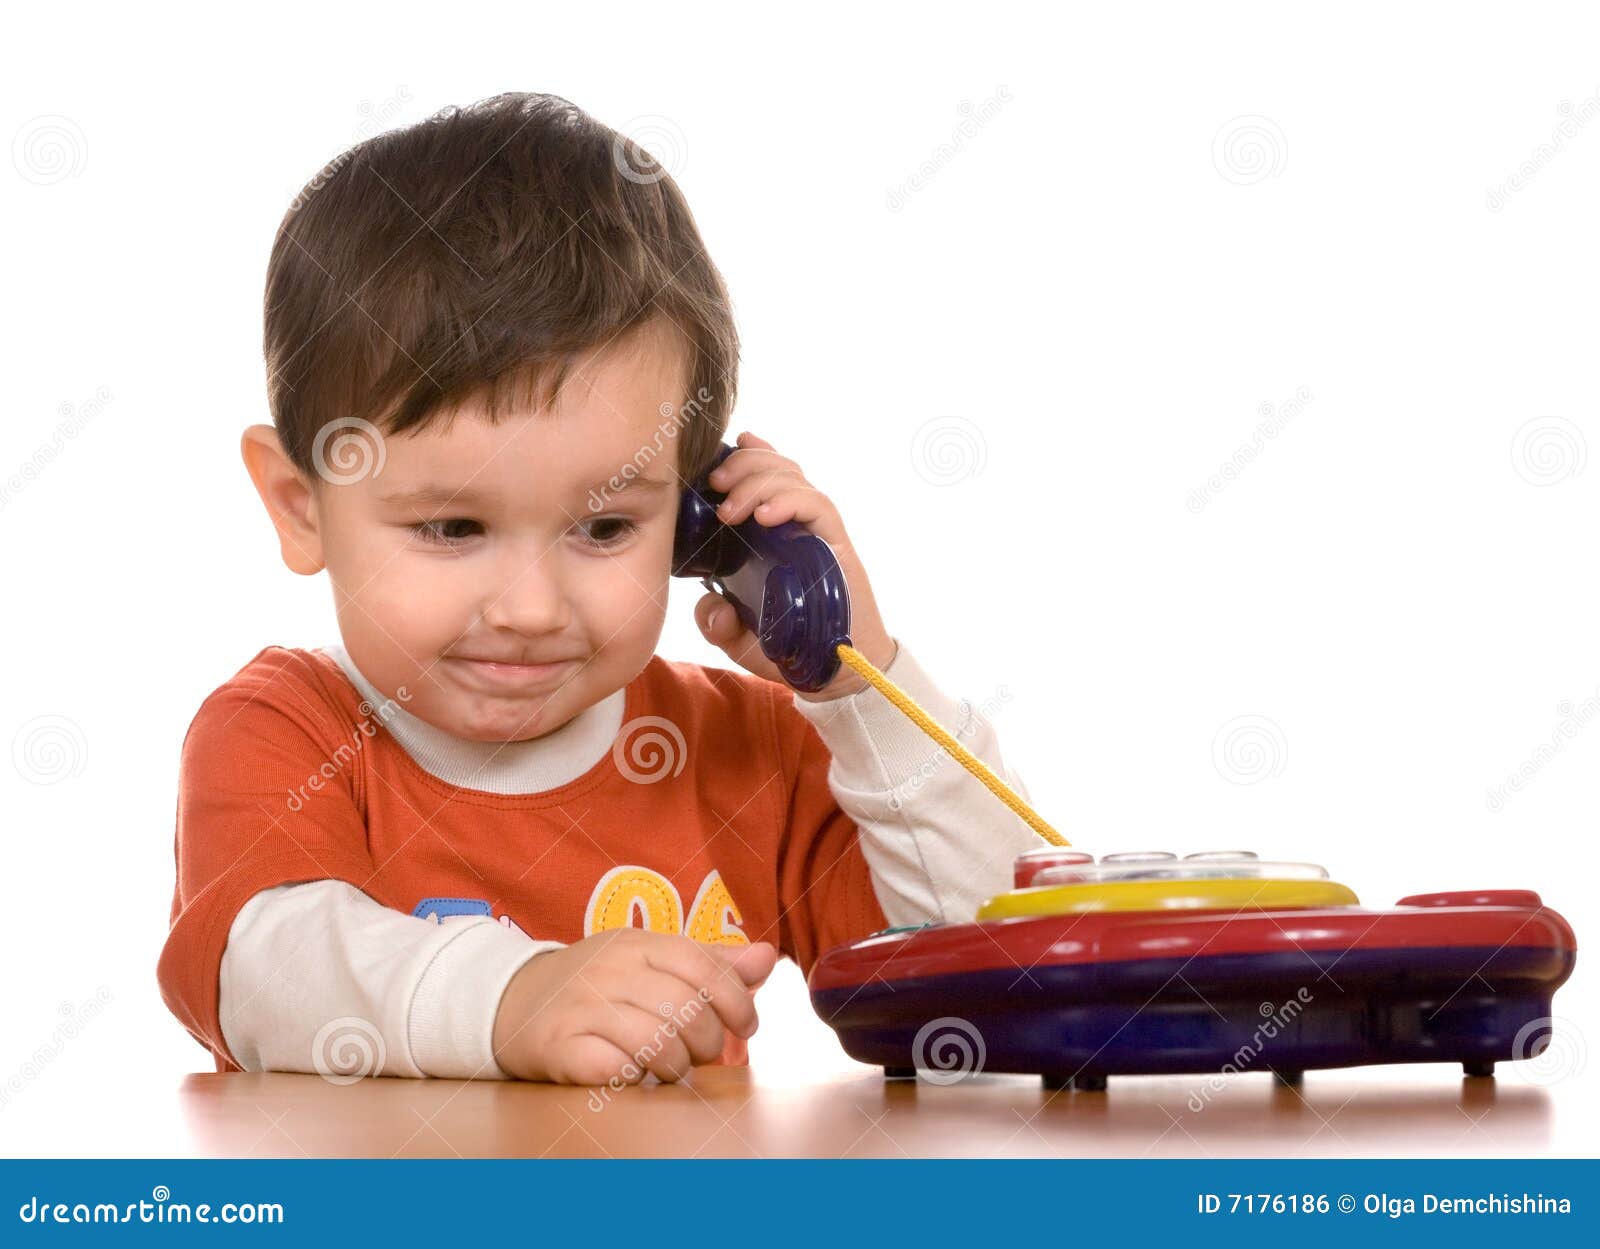 Включи телефон мальчик. Мальчик с телефоном. Мальчик играет в телефон. Игра телефон, как мальчик играет. Ребенок звонит по игрушечному телефону.